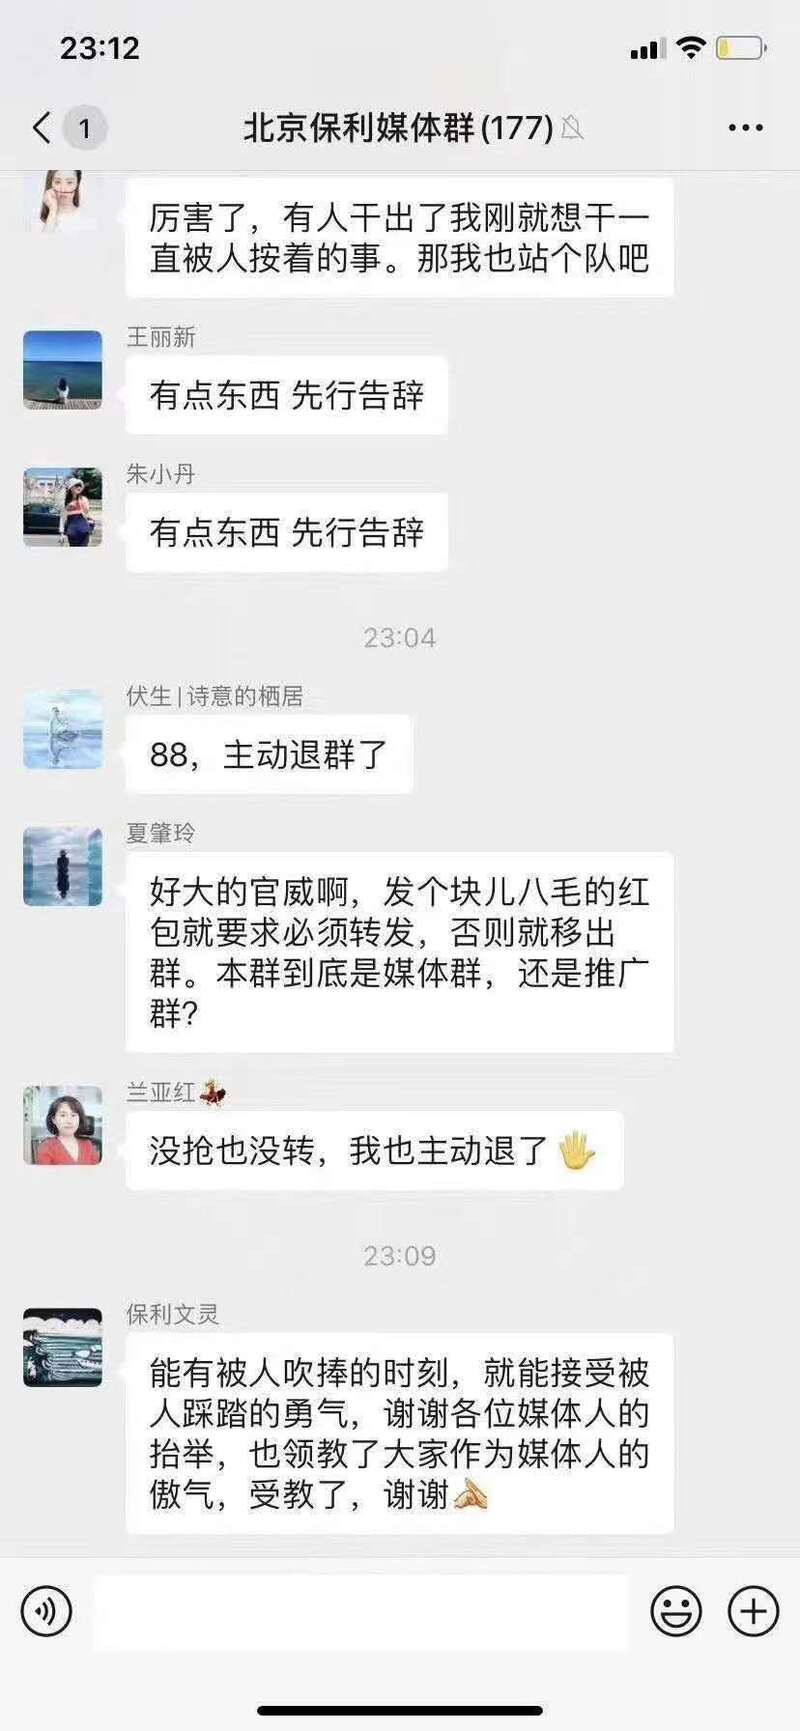 保利北京：“不转发就移出群聊”的北京媒体朋友圈